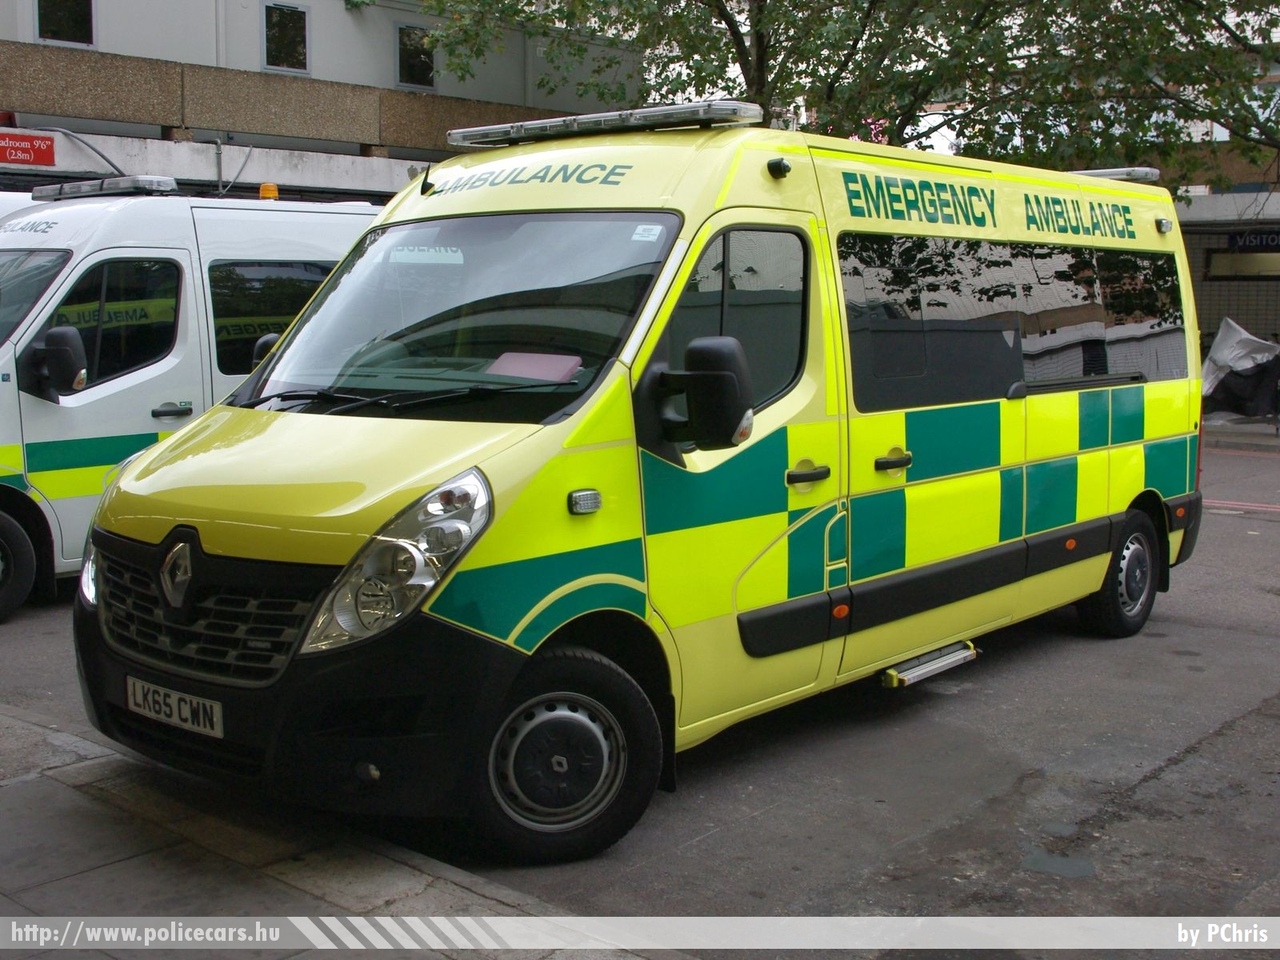 Renault Master, fotó: PChris
Keywords: angol Anglia mentő mentőautó ambulance United Kingdom